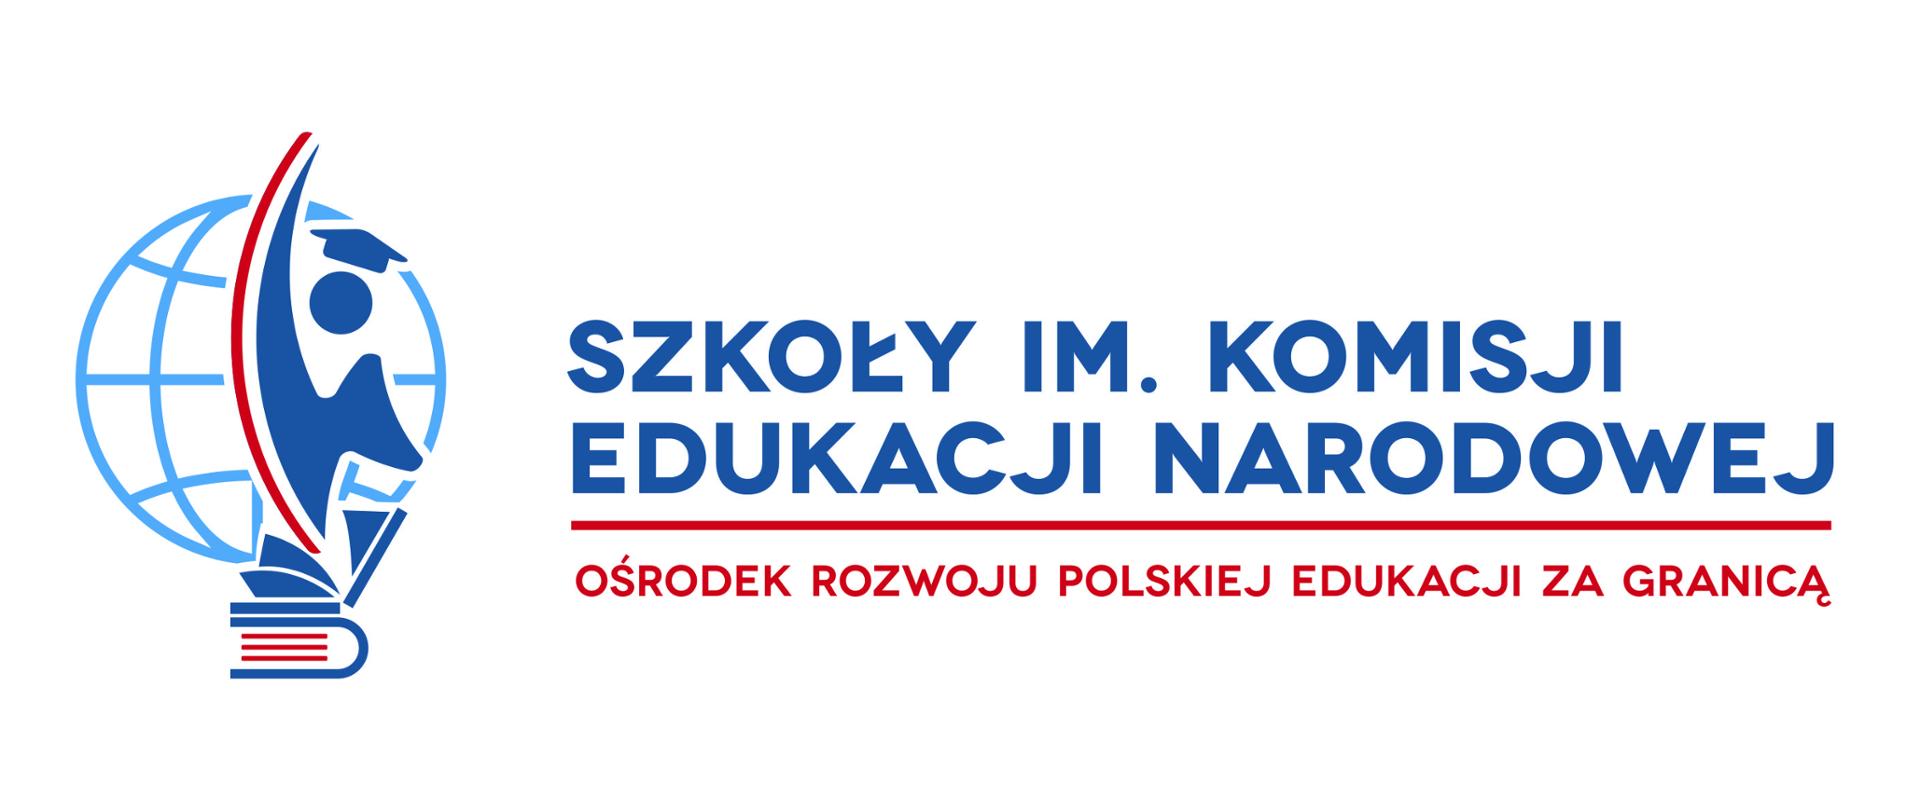 Ośrodek Rozwoju Polskiej Edukacji za Granicą (ORPEG), podległy Ministrowi Edukacji i Nauki rozpoczął rekrutację do szkół w systemie kształcenia na odległość w ramach Szkoły Podstawowej im. Komisji Edukacji Narodowej oraz Liceum im. Komisji Edukacji Narodowej. 